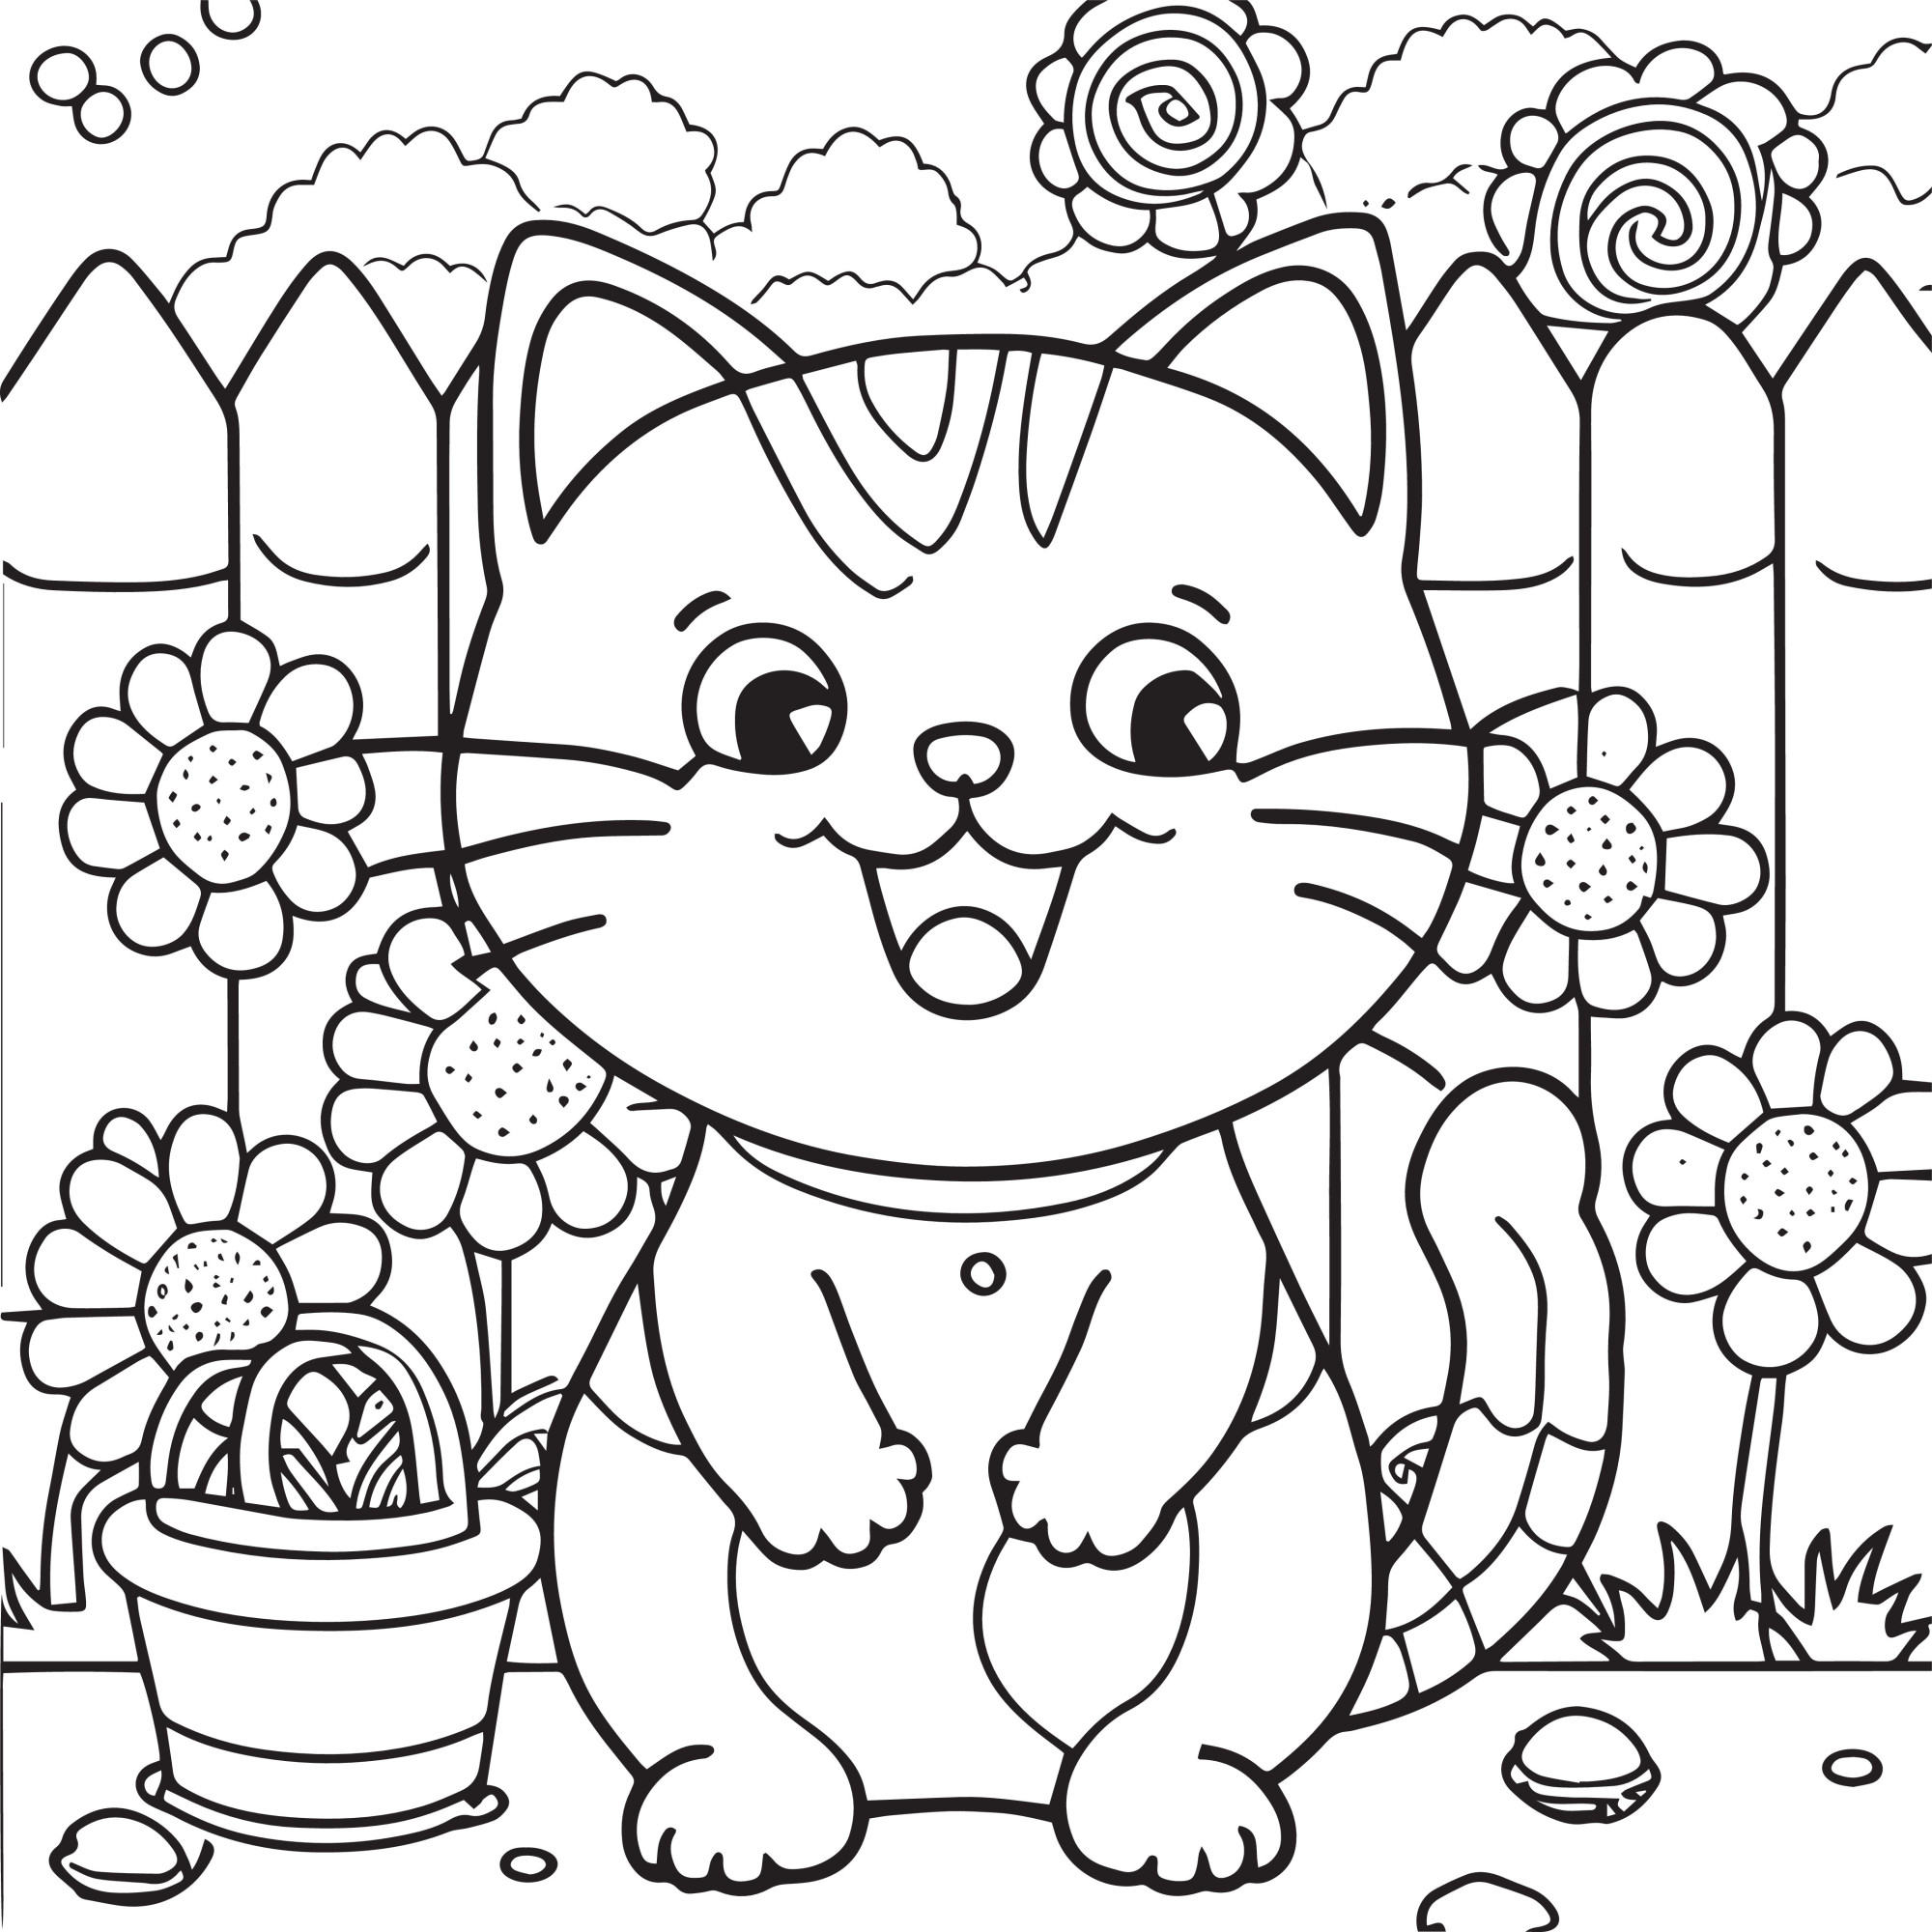 Раскраска для детей: cчастливый кот на фоне садового забора с цветами